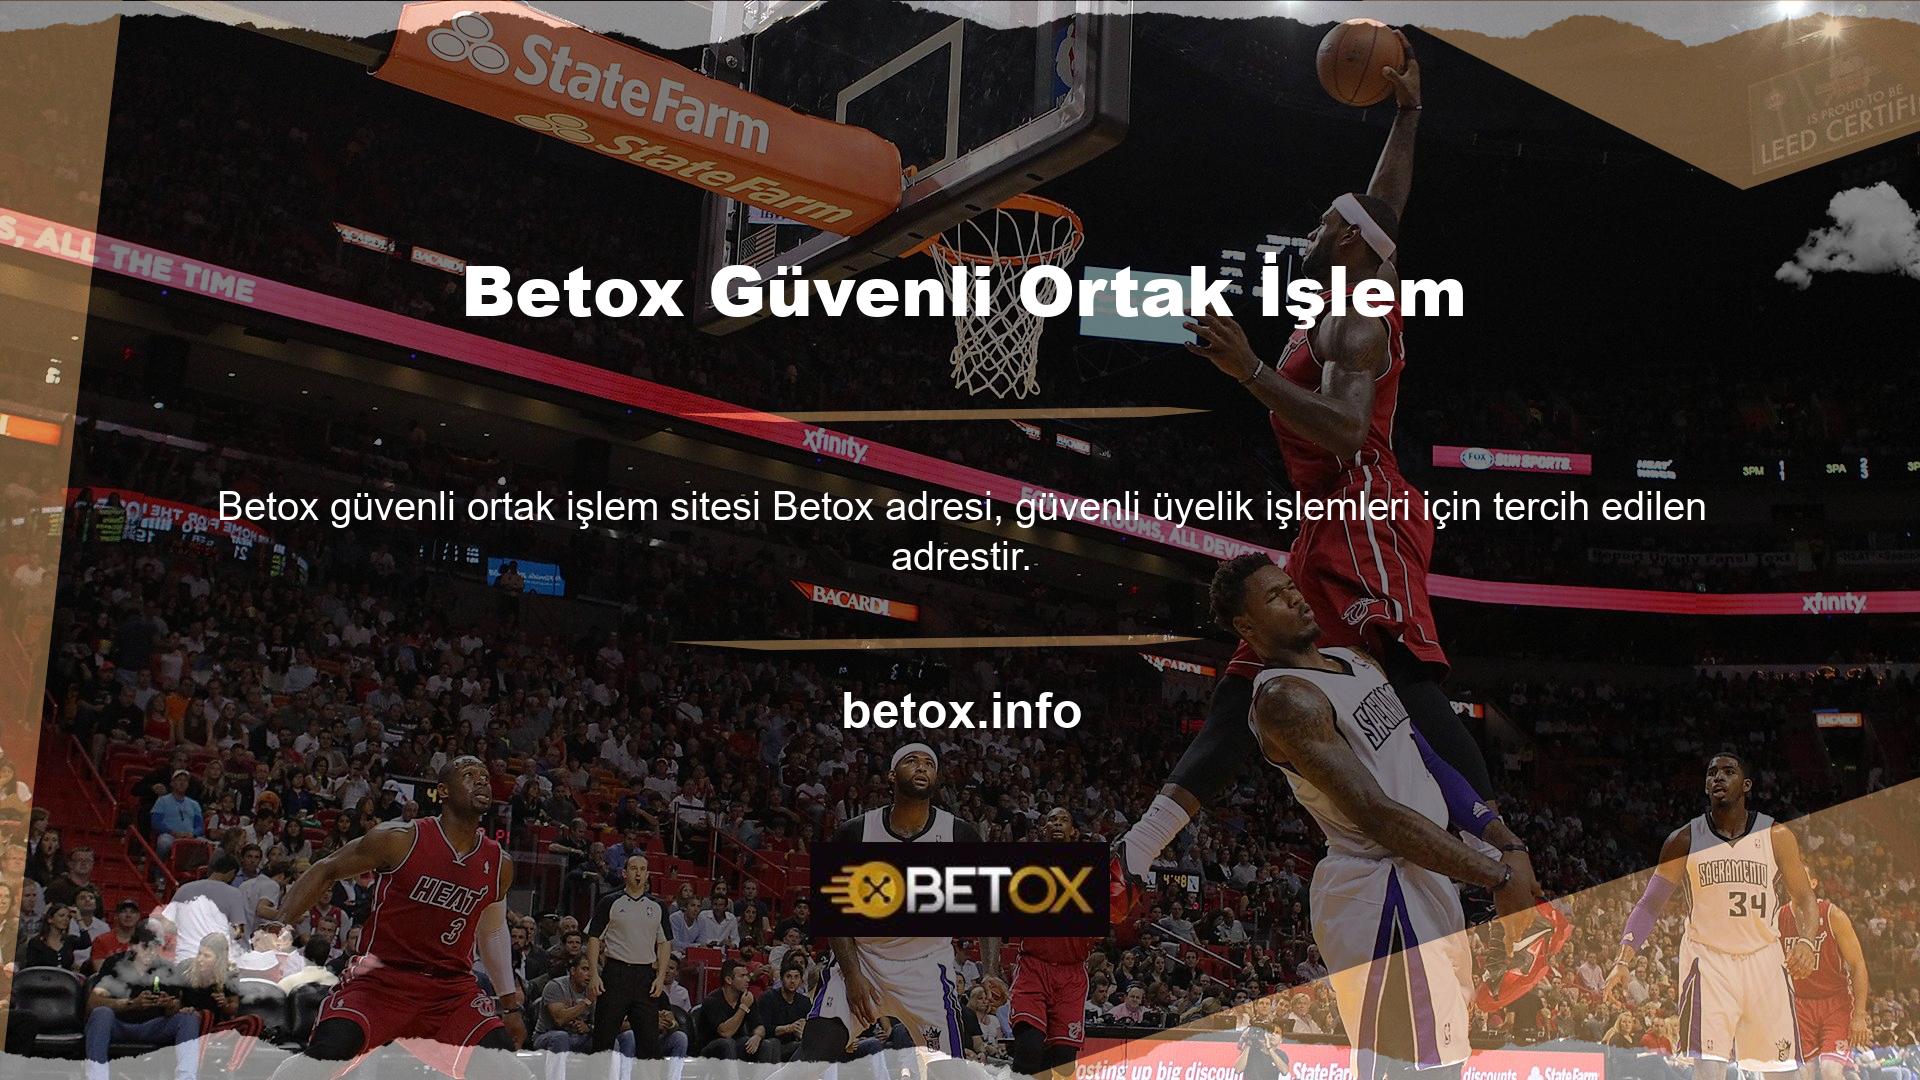 Tüm Betox güvenli ortak işlem oyun seçenekleri Betox web sitesinde mevcuttur